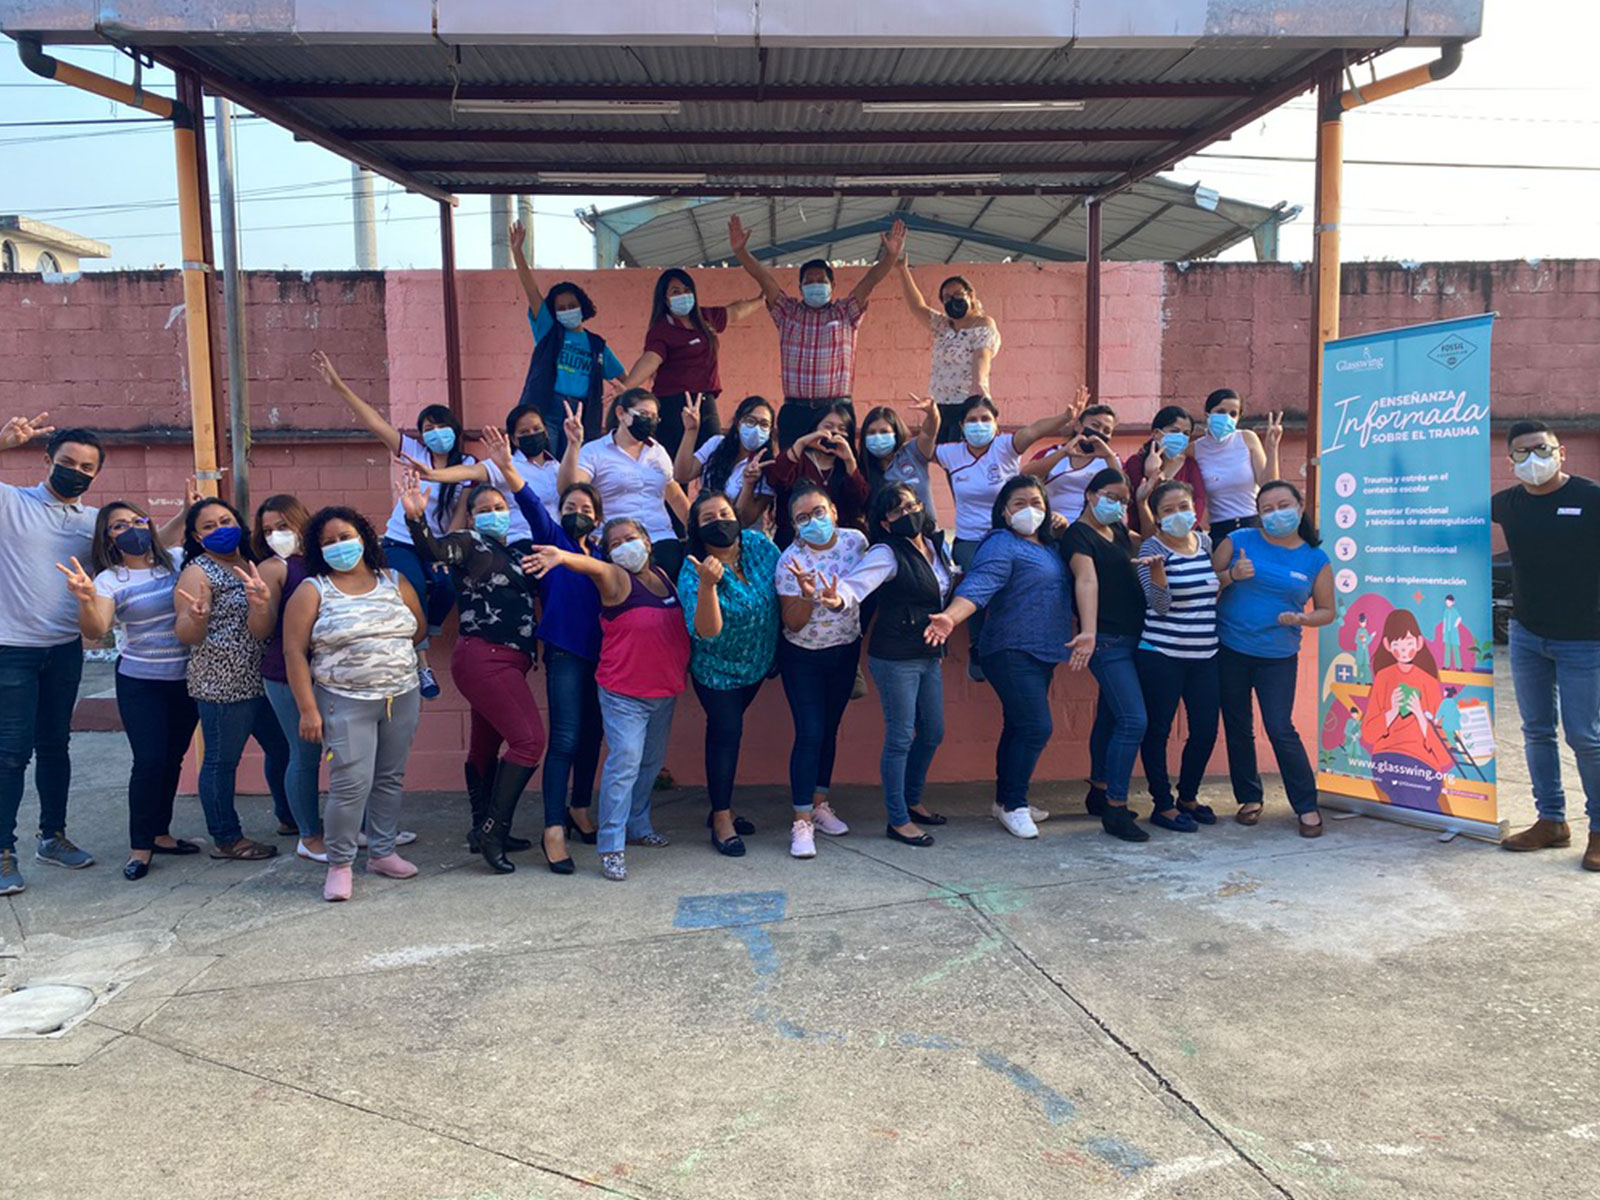 Ampliación de prácticas informadas sobre el trauma a escuelas en Guatemala